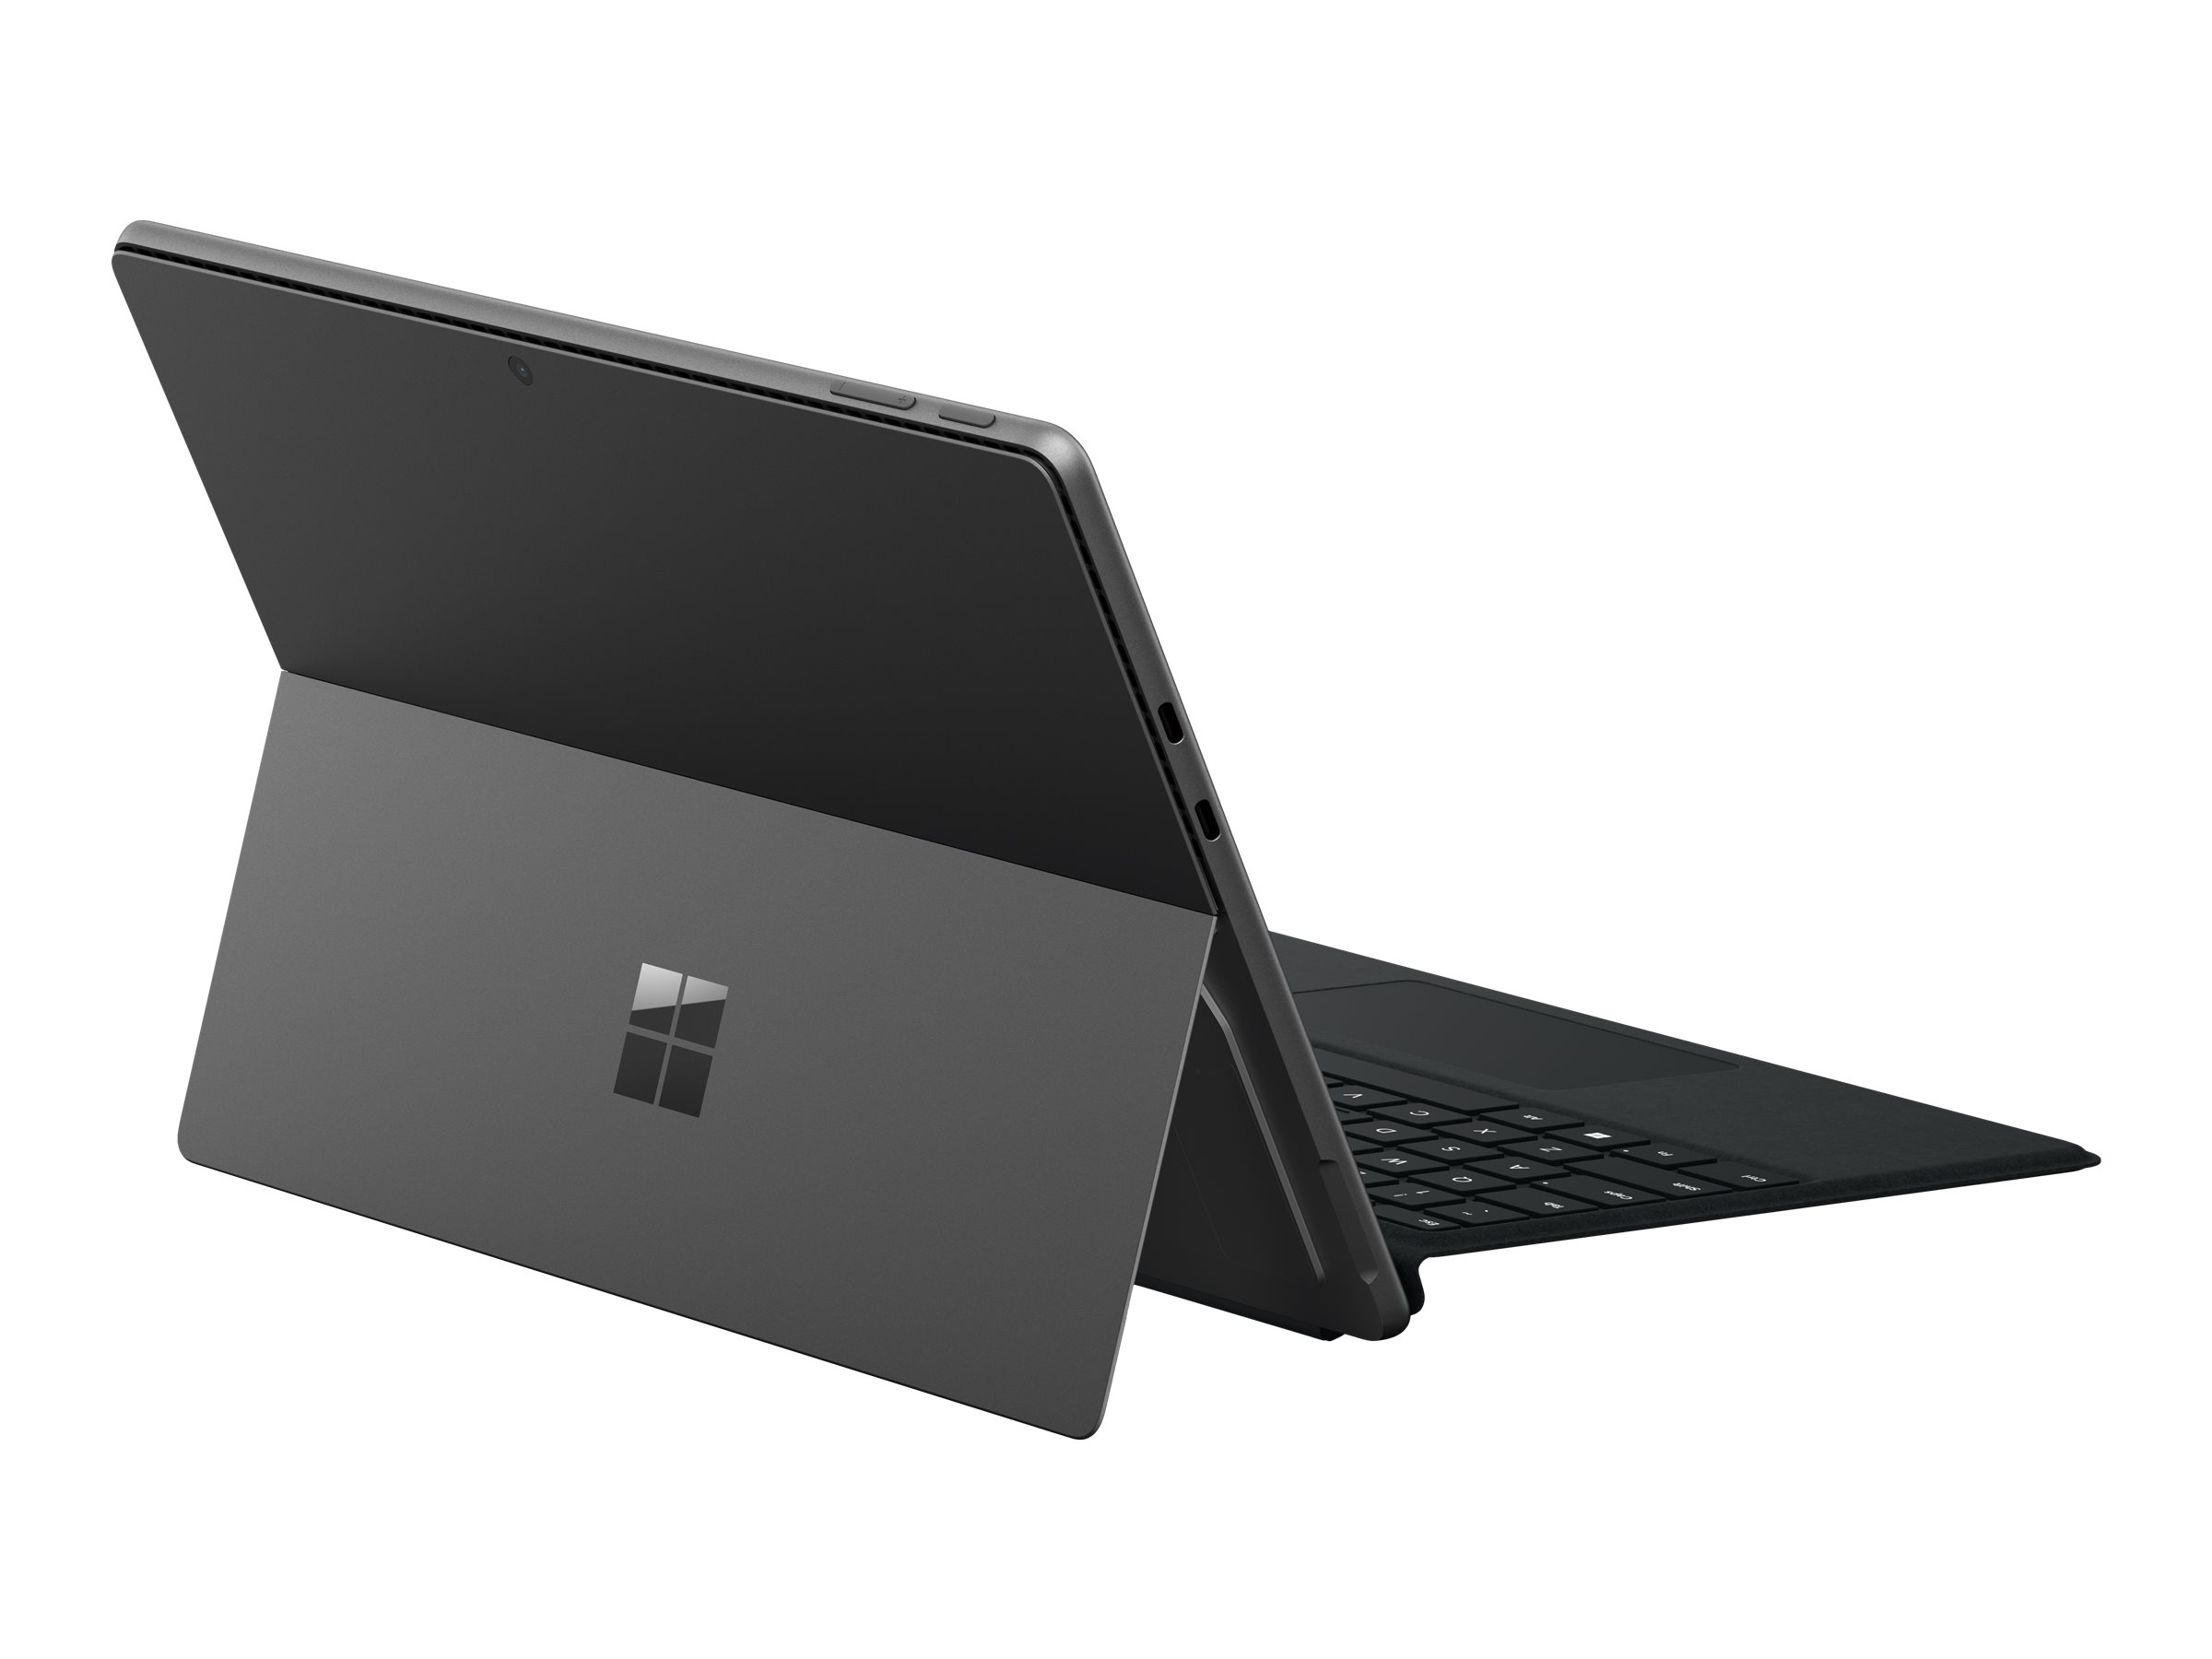 Microsoft Surface Pro 9 for Business - Tablette - Intel Core i7 - 1265U / jusqu'à 4.8 GHz - Evo - Win 11 Pro - Carte graphique Intel Iris Xe - 16 Go RAM - 512 Go SSD - 13" écran tactile 2880 x 1920 @ 120 Hz - Wi-Fi 6E - graphite - QIY-00020 - Ordinateurs portables